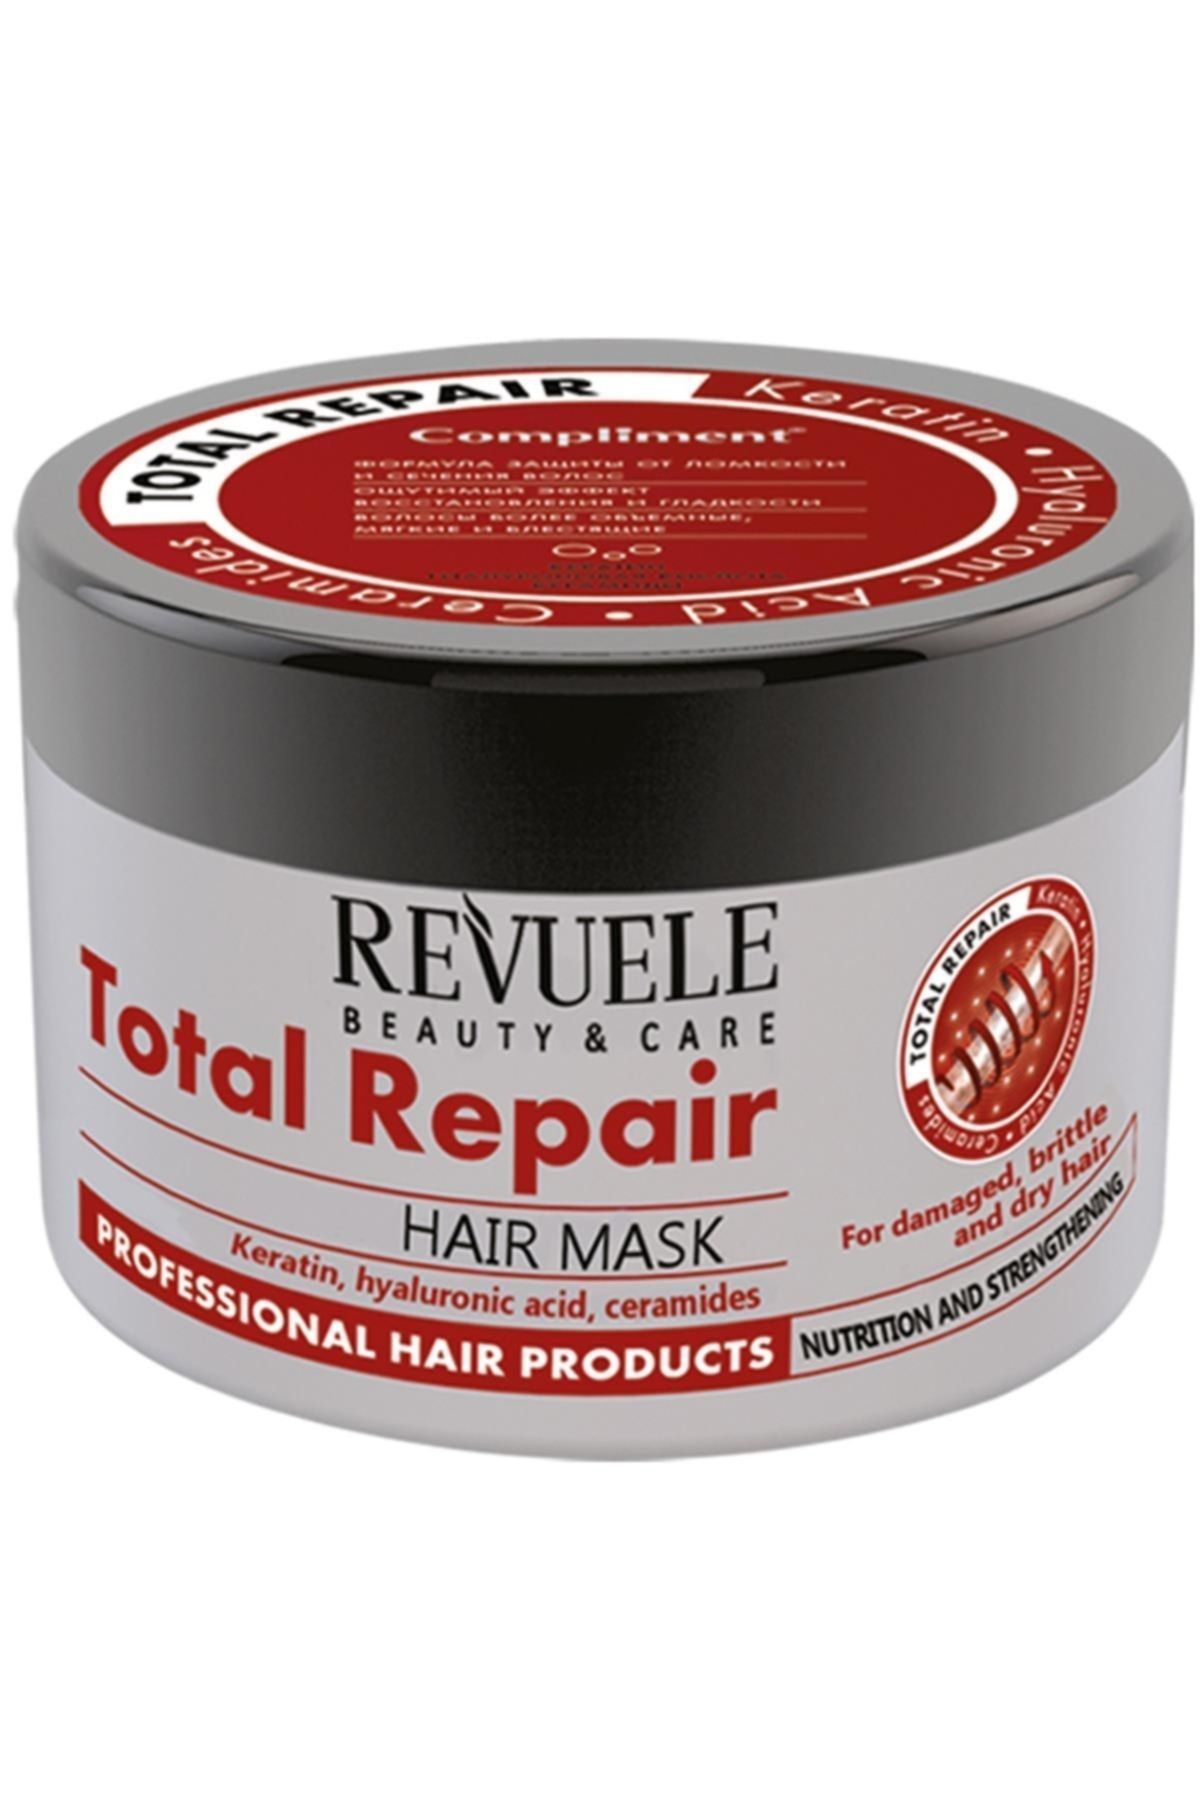 Купить маску compliment. Маска compliment total Repair. Compliment маска для волос. Маска для волос total Repair. Маска для волос комплимент total Repair с кератином.